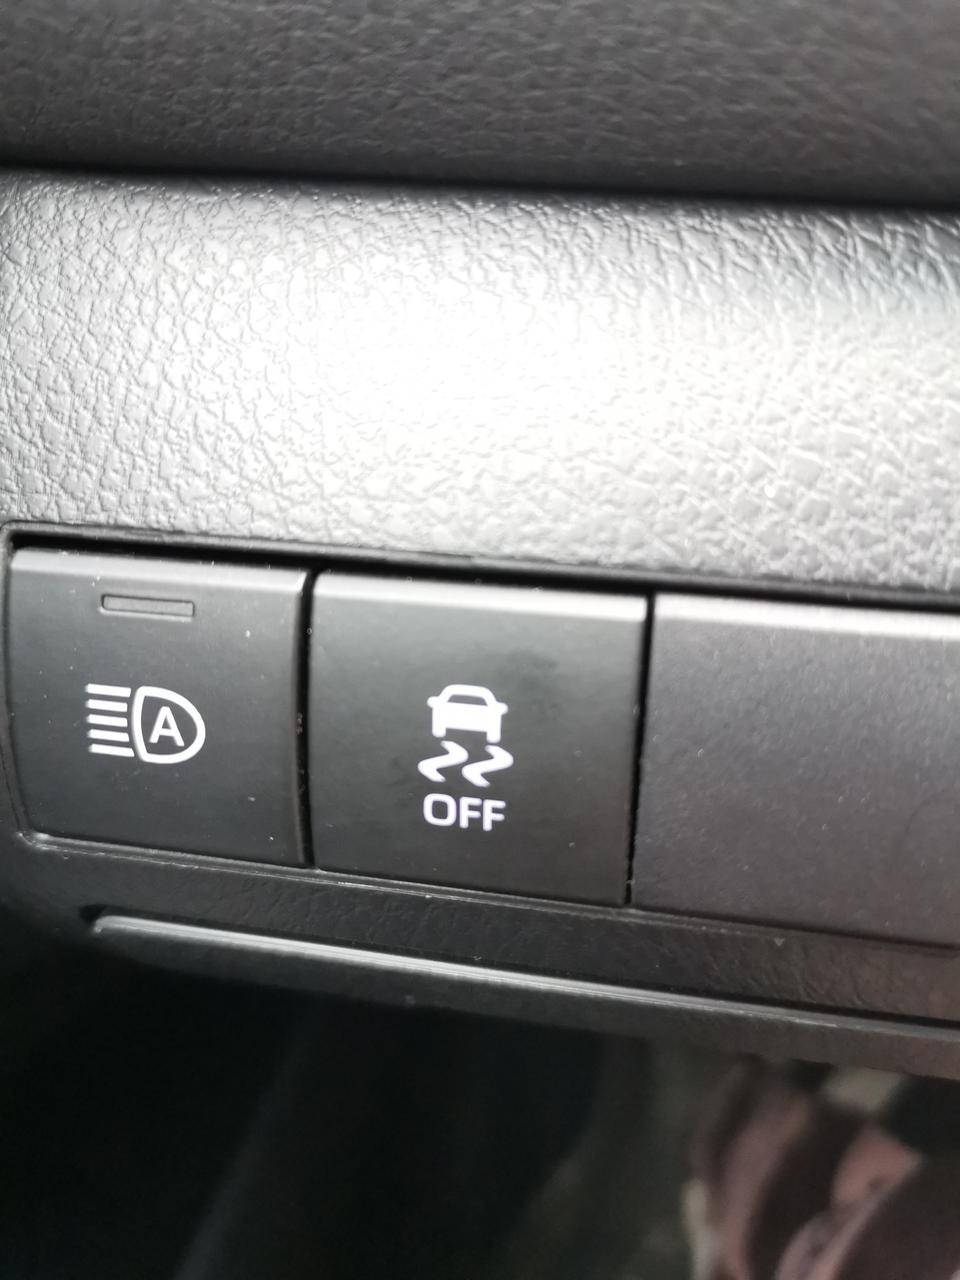 丰田trc按钮图片